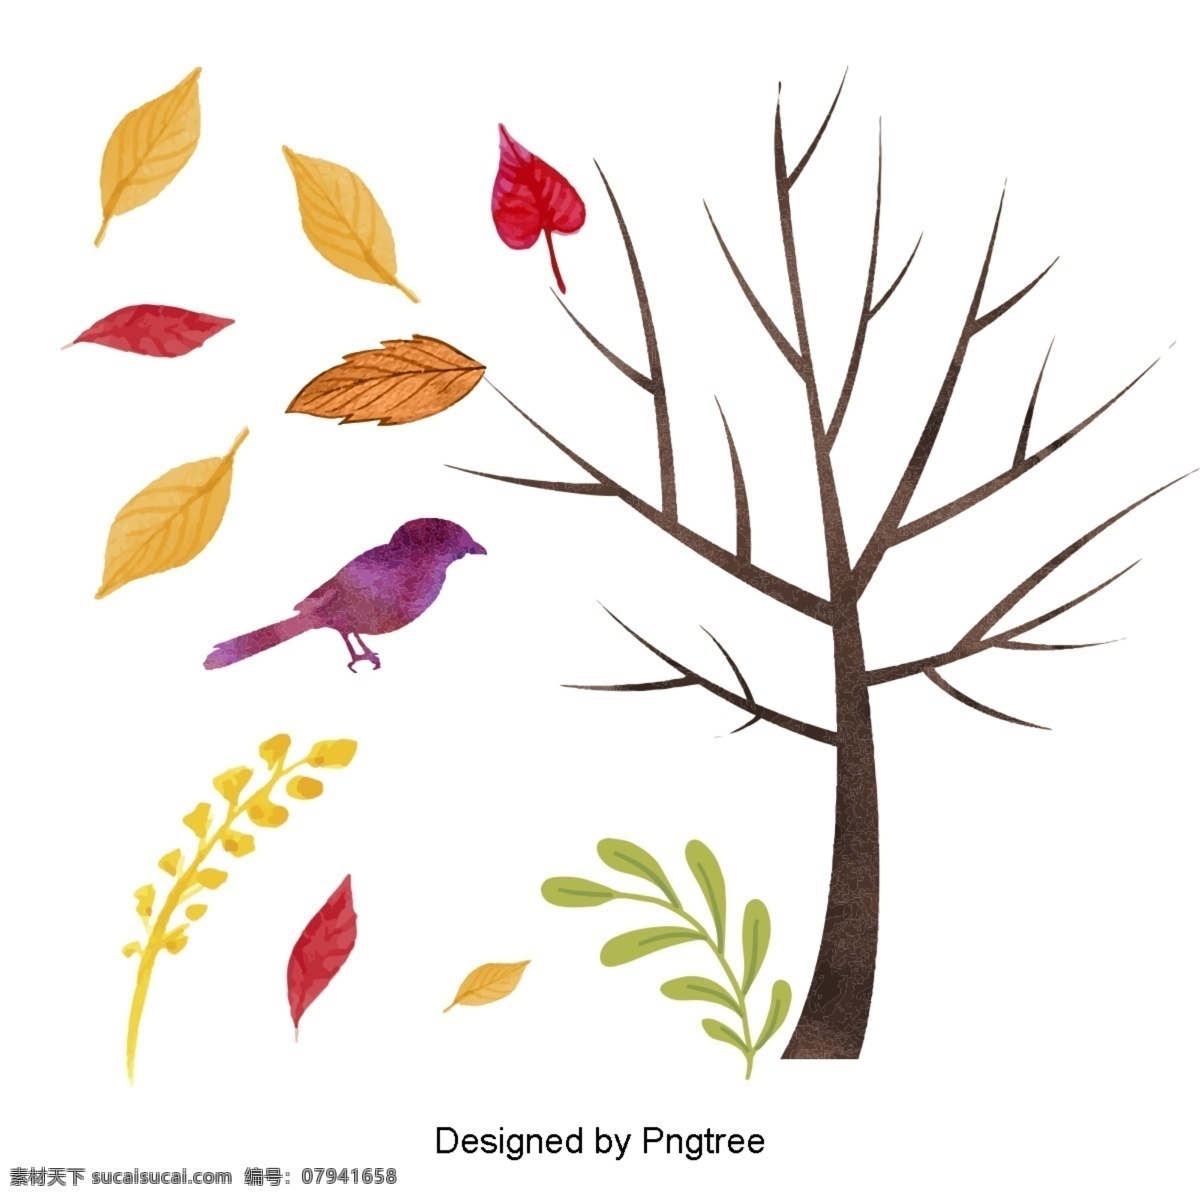 简单 手绘 秋季 元素 季节性 绘画 艺术 落叶 可爱 动物 卡通